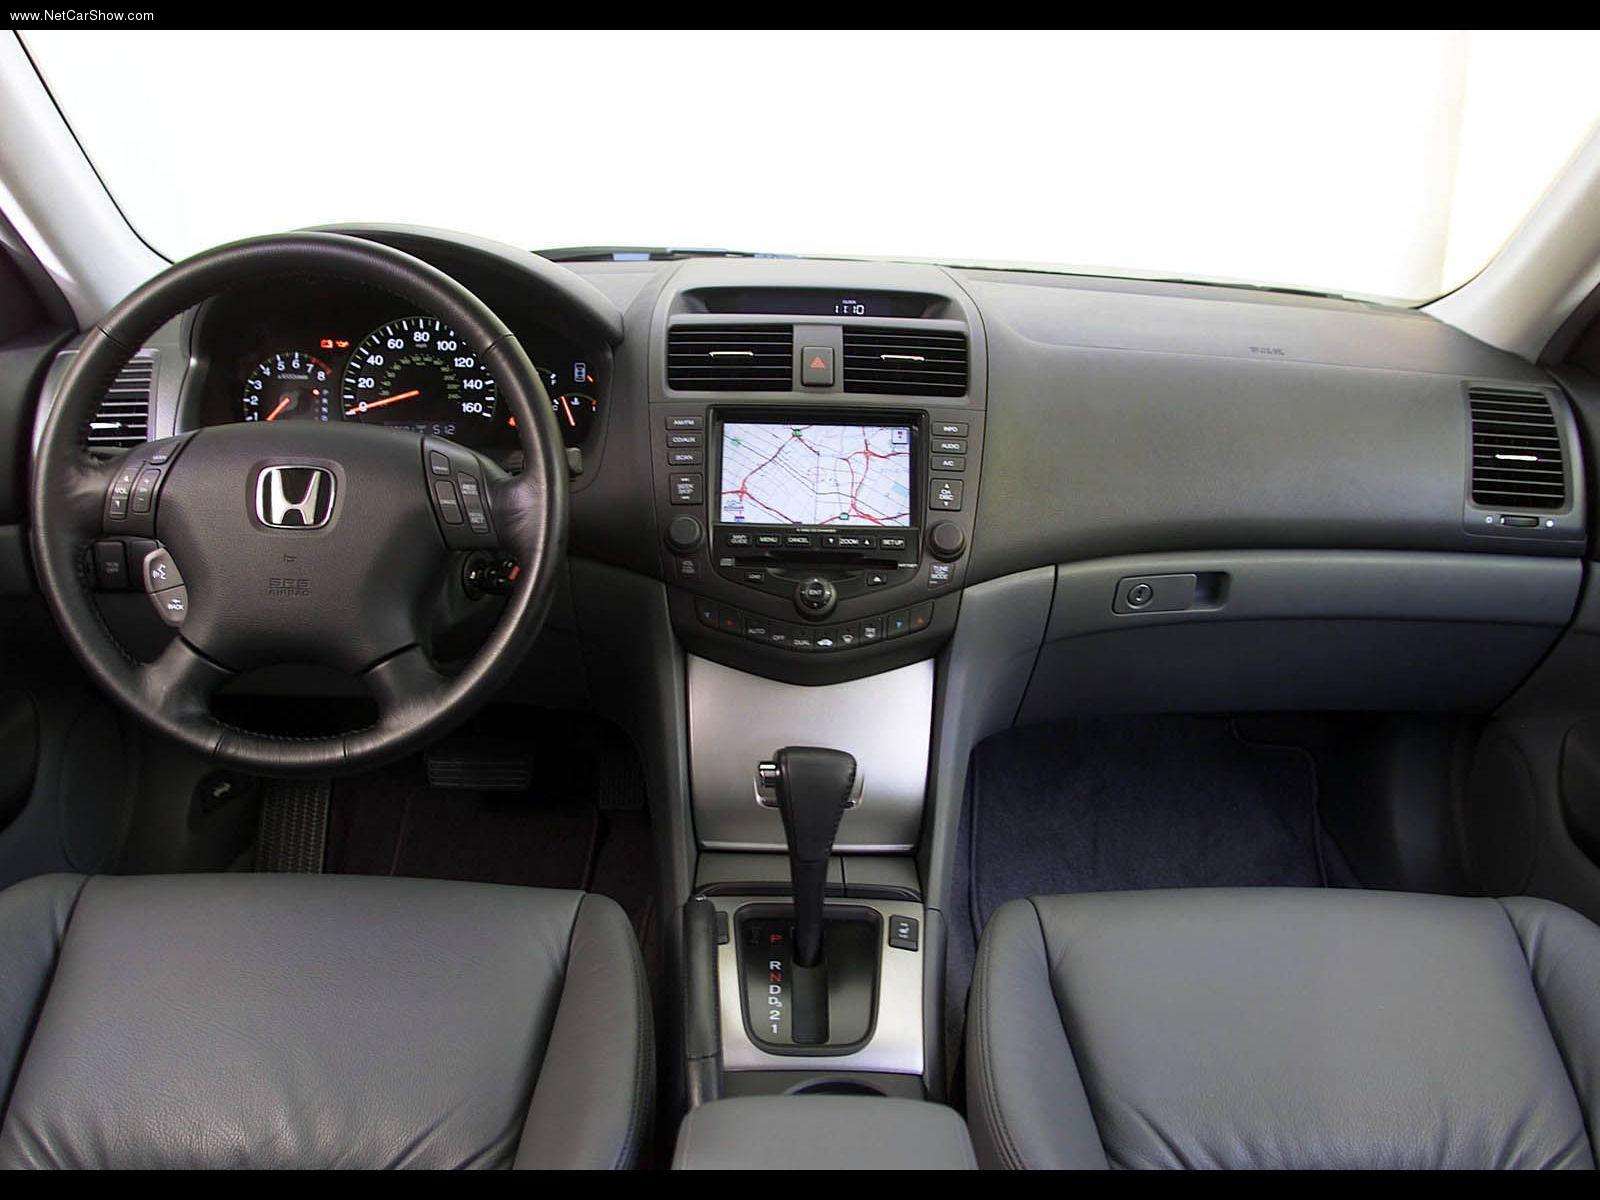 Honda Accord Sedan 2003 Honda-Accord_Sedan-2003-1600-14